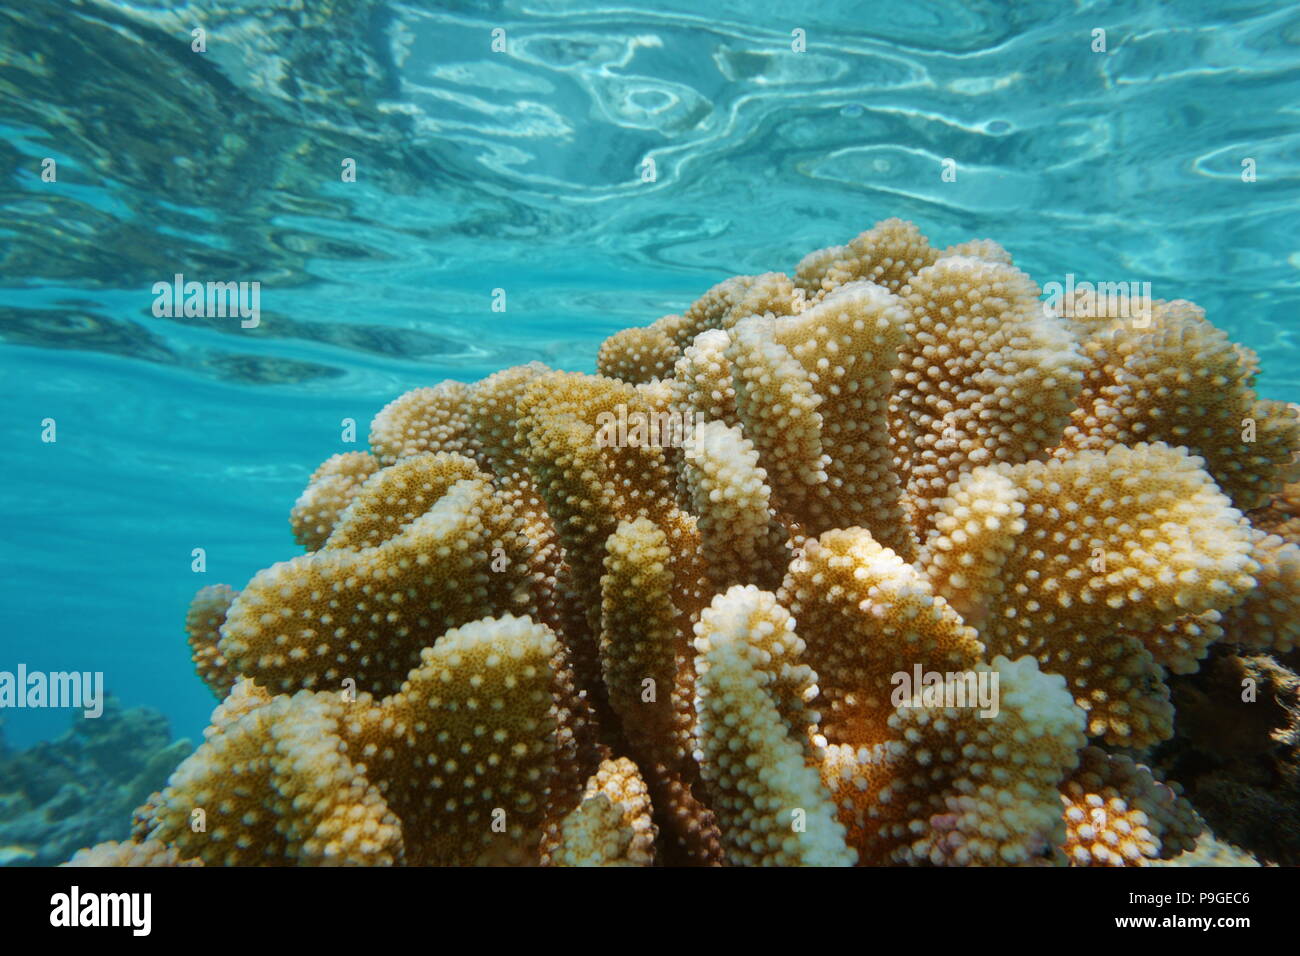 Close up of underwater corail pocillopora, communément appelé corail chou-fleur, l'océan Pacifique, Polynésie française, Samoa Américaines Banque D'Images